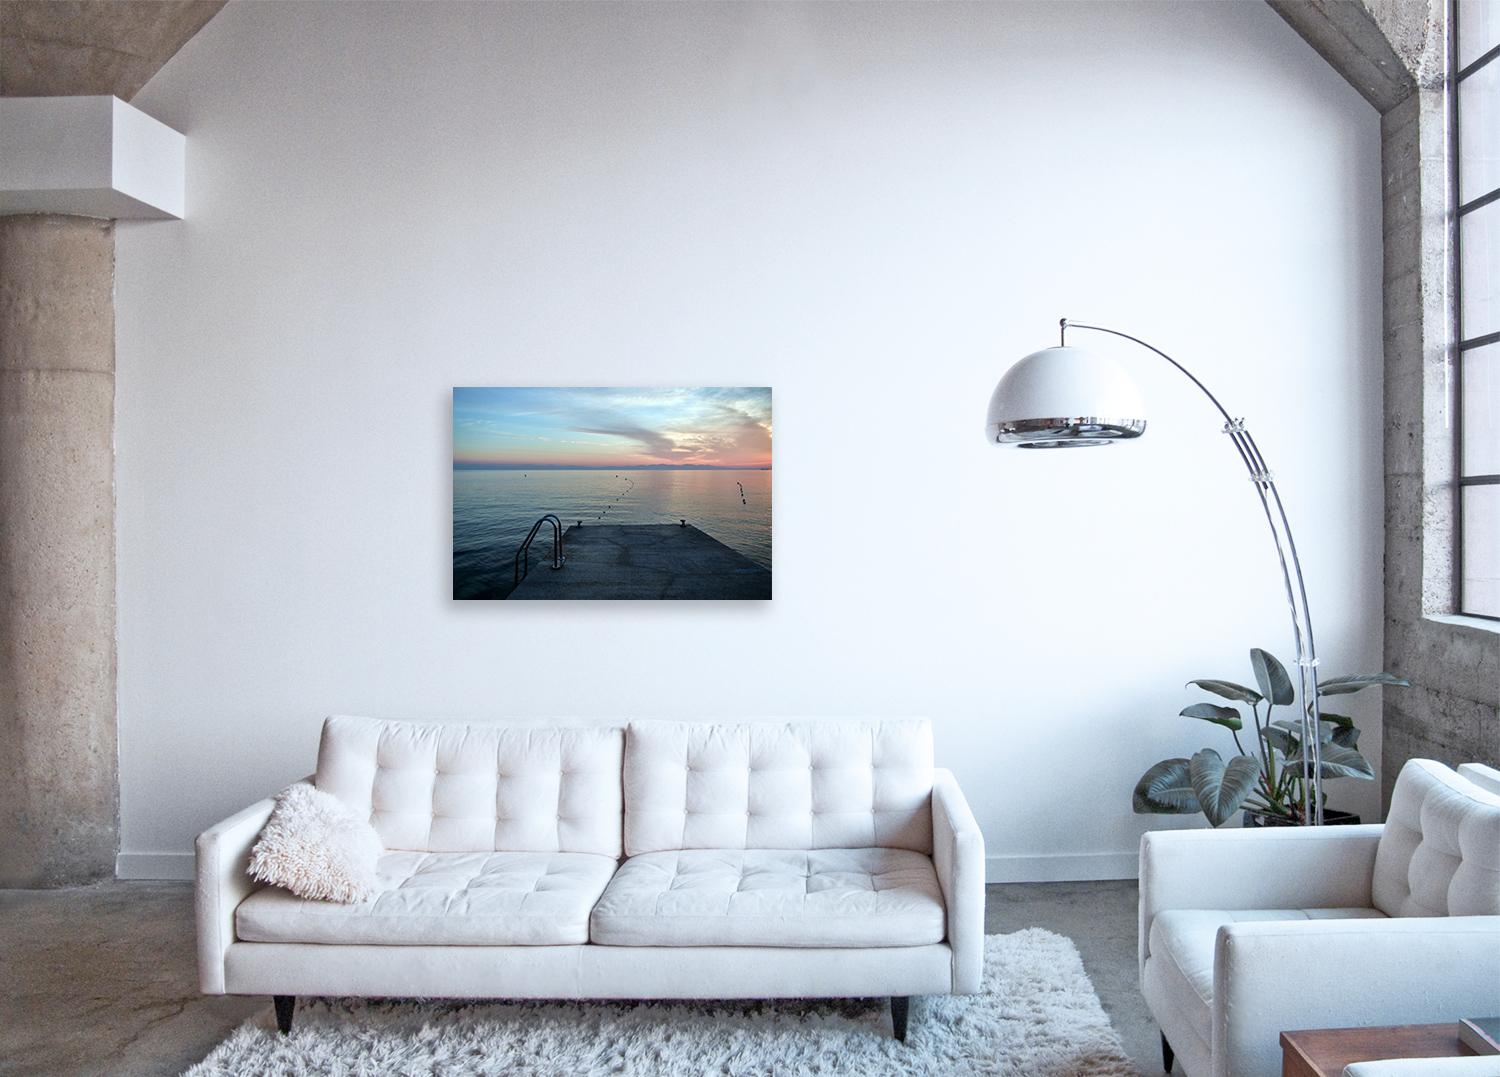 Faszinierende großformatige Fotografie aus der Seascape-Serie des Künstlers, einer Reihe von Werken, die die taktilen Oberflächen und die monochromatische Natur von Meereswasser und Sonnenuntergängen einfangen 

Mittelmeer-Dip von Frank Schott

48 x